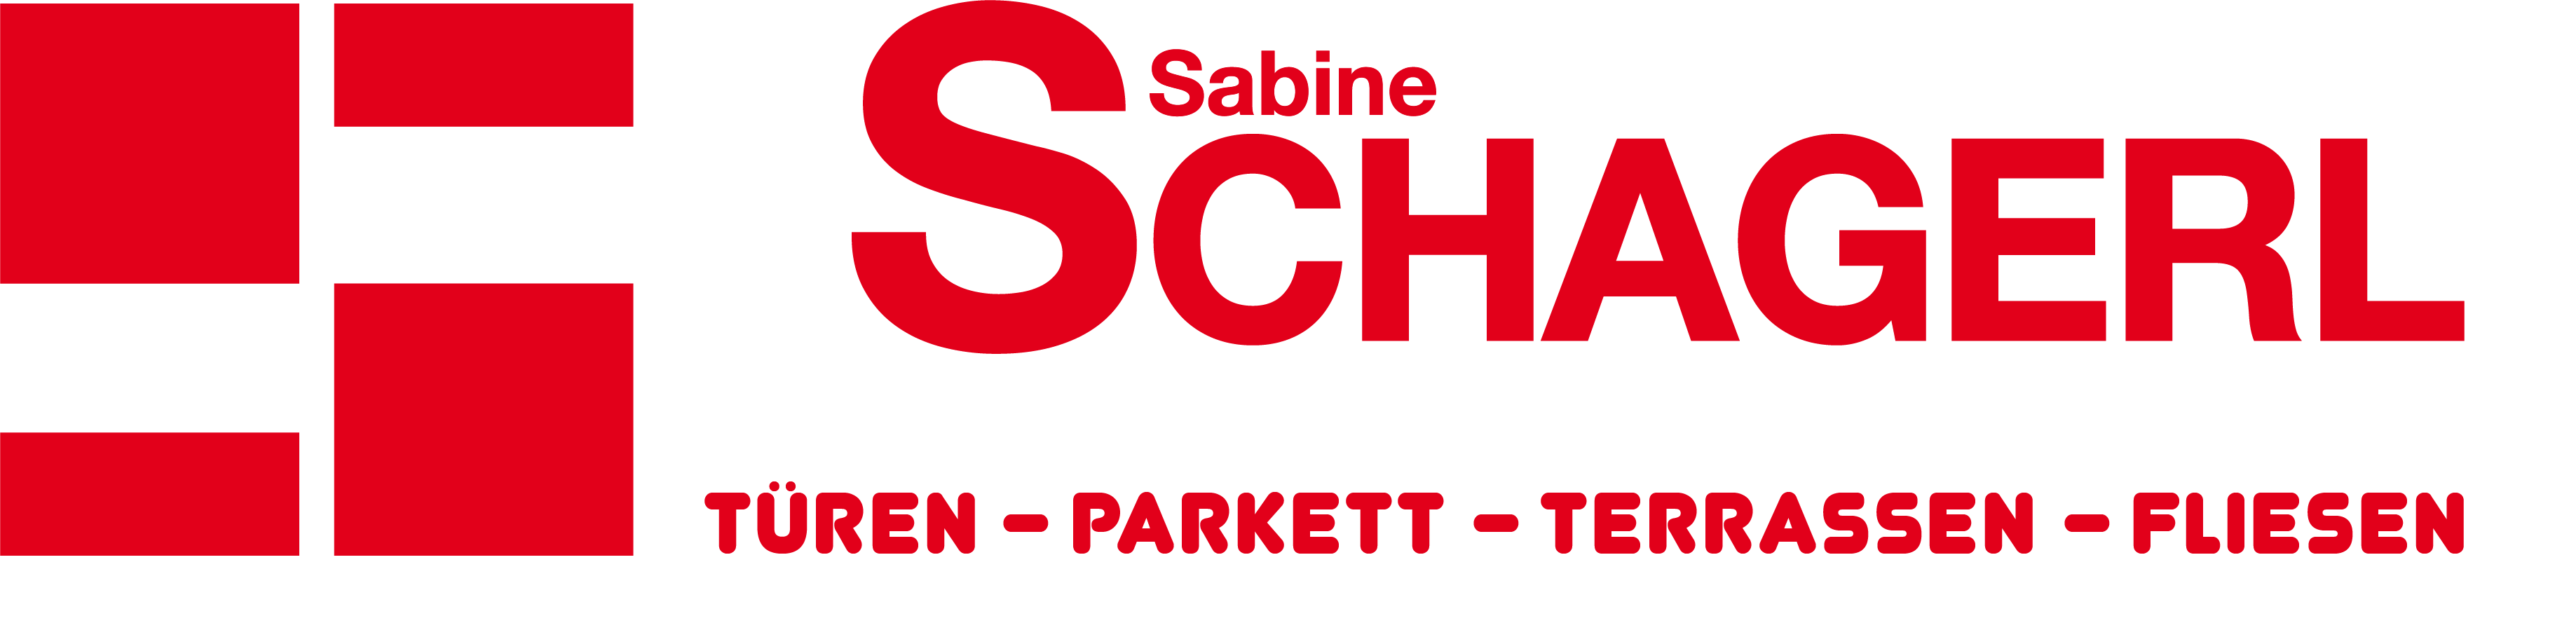 Sabine Schagerl türenlager